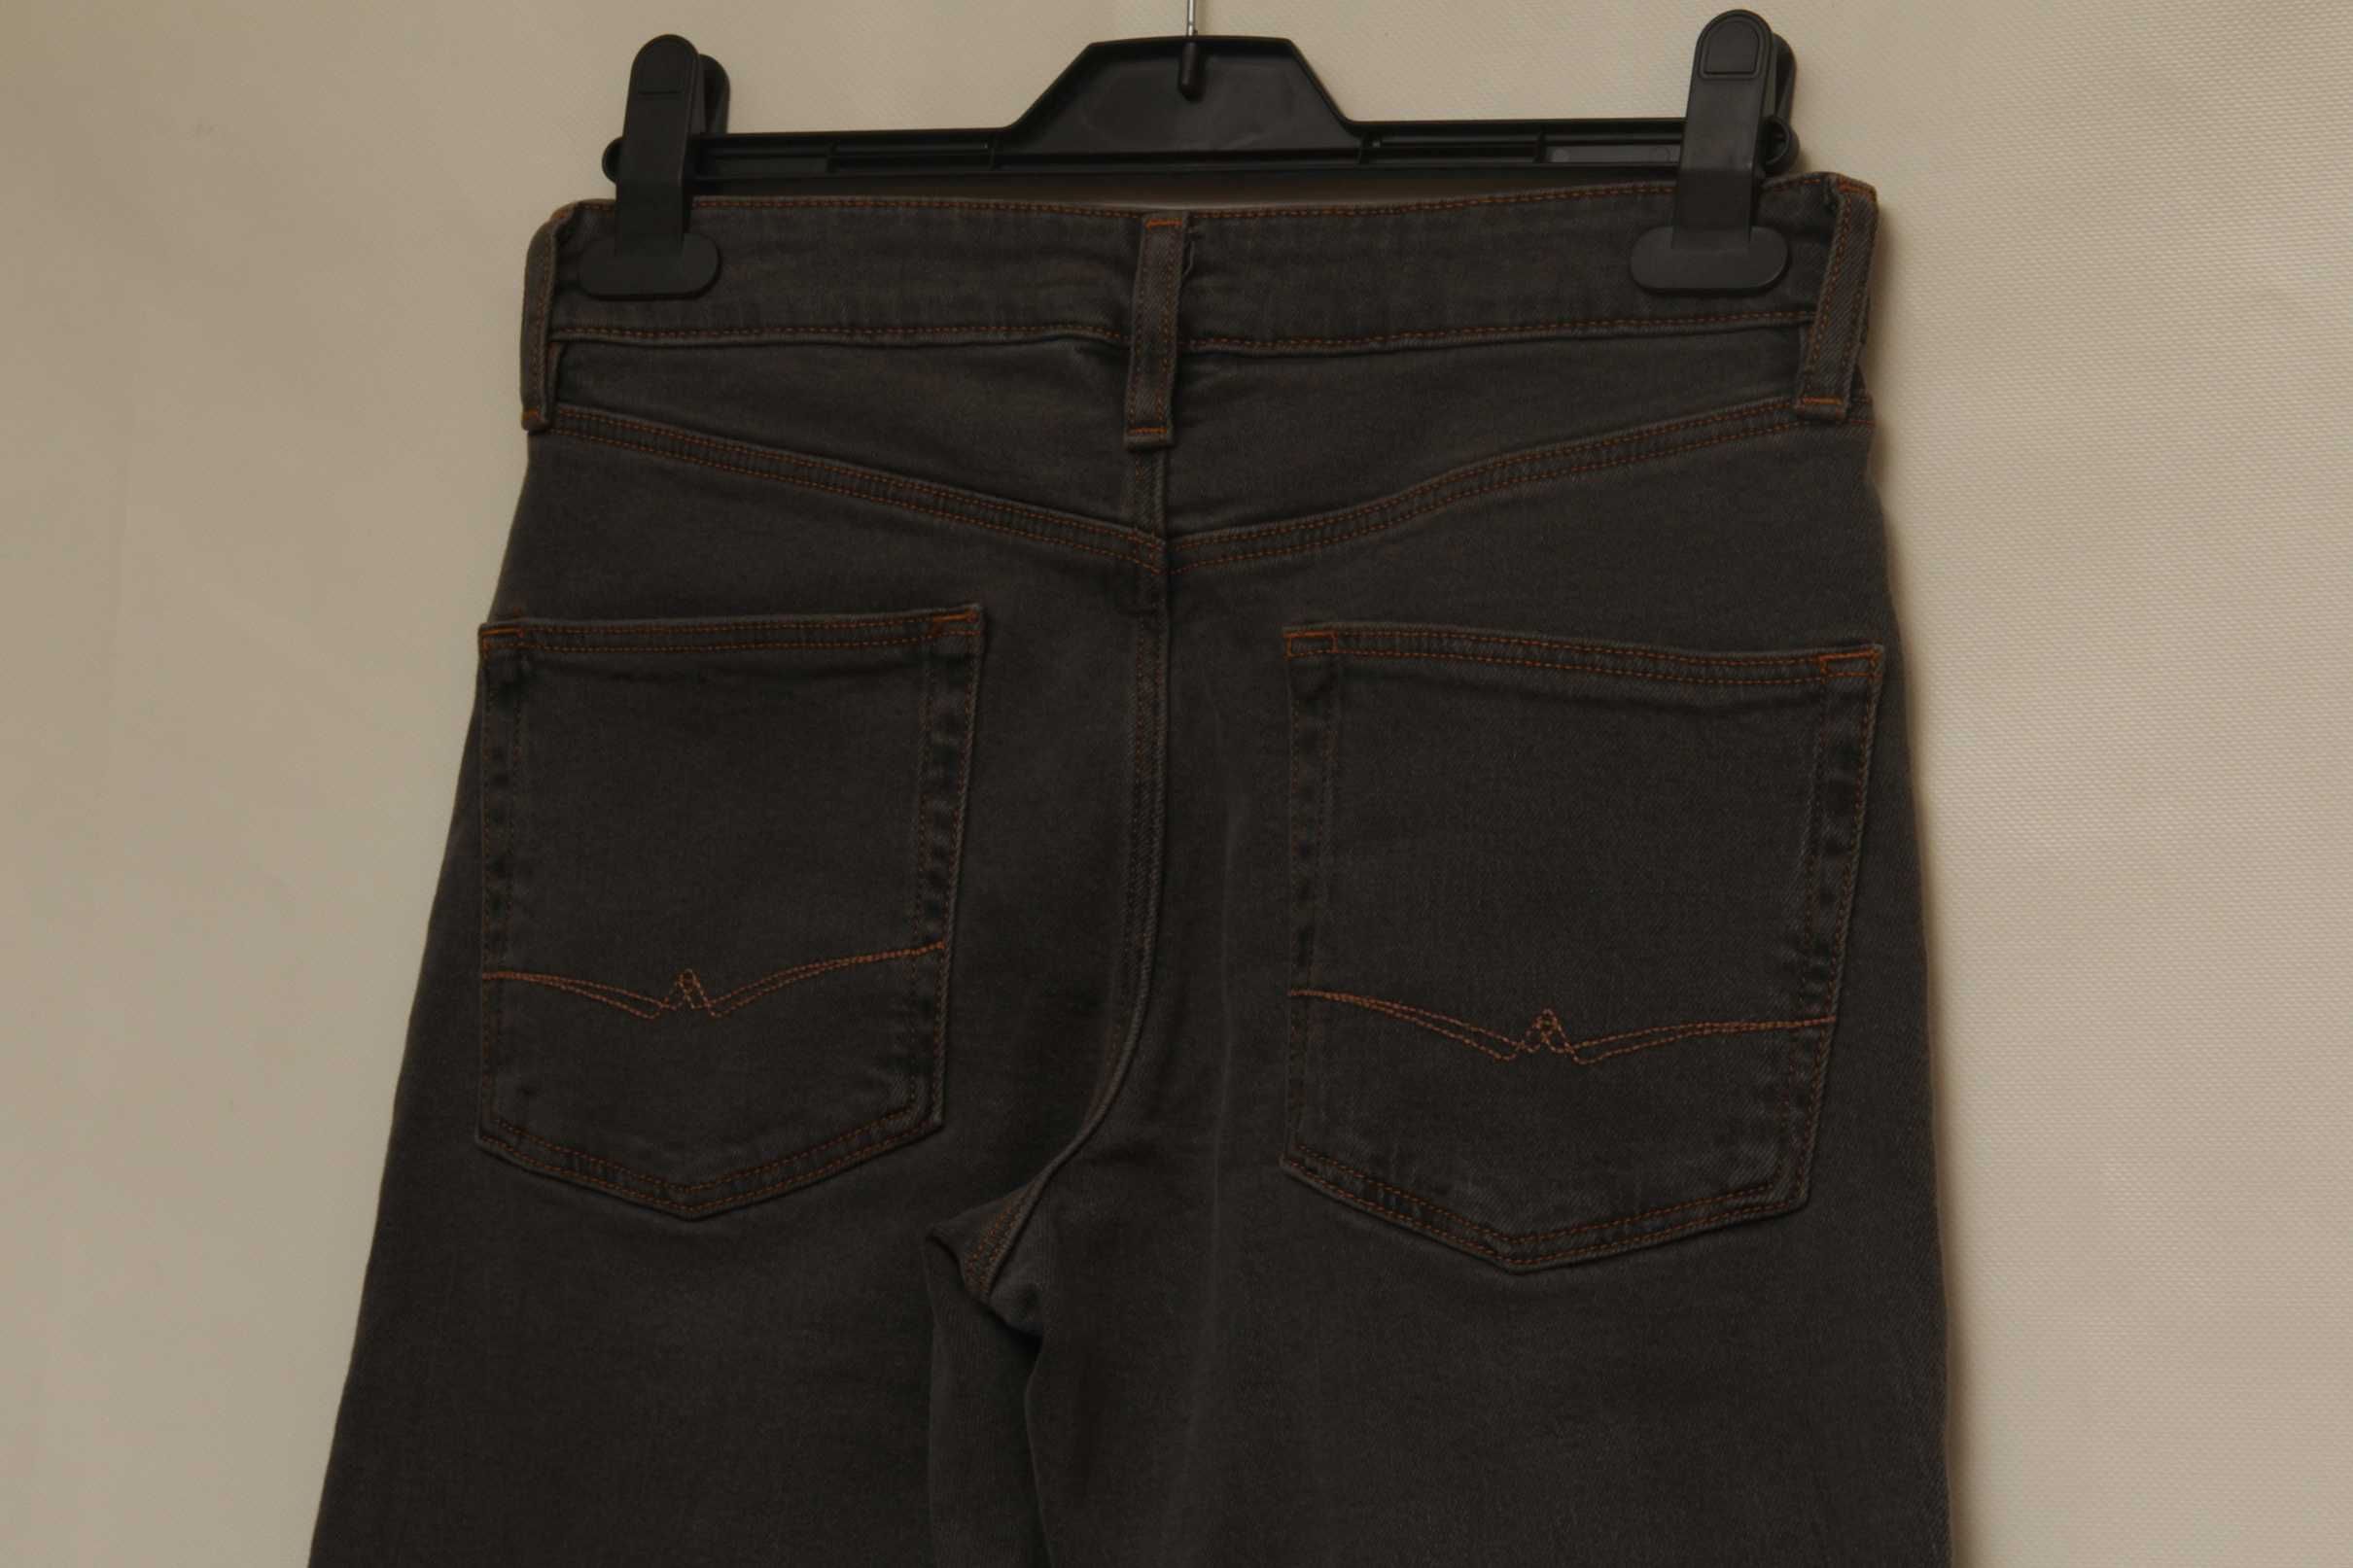 Asos 28 30 джинсы из хлопка и эластина полностью новые.